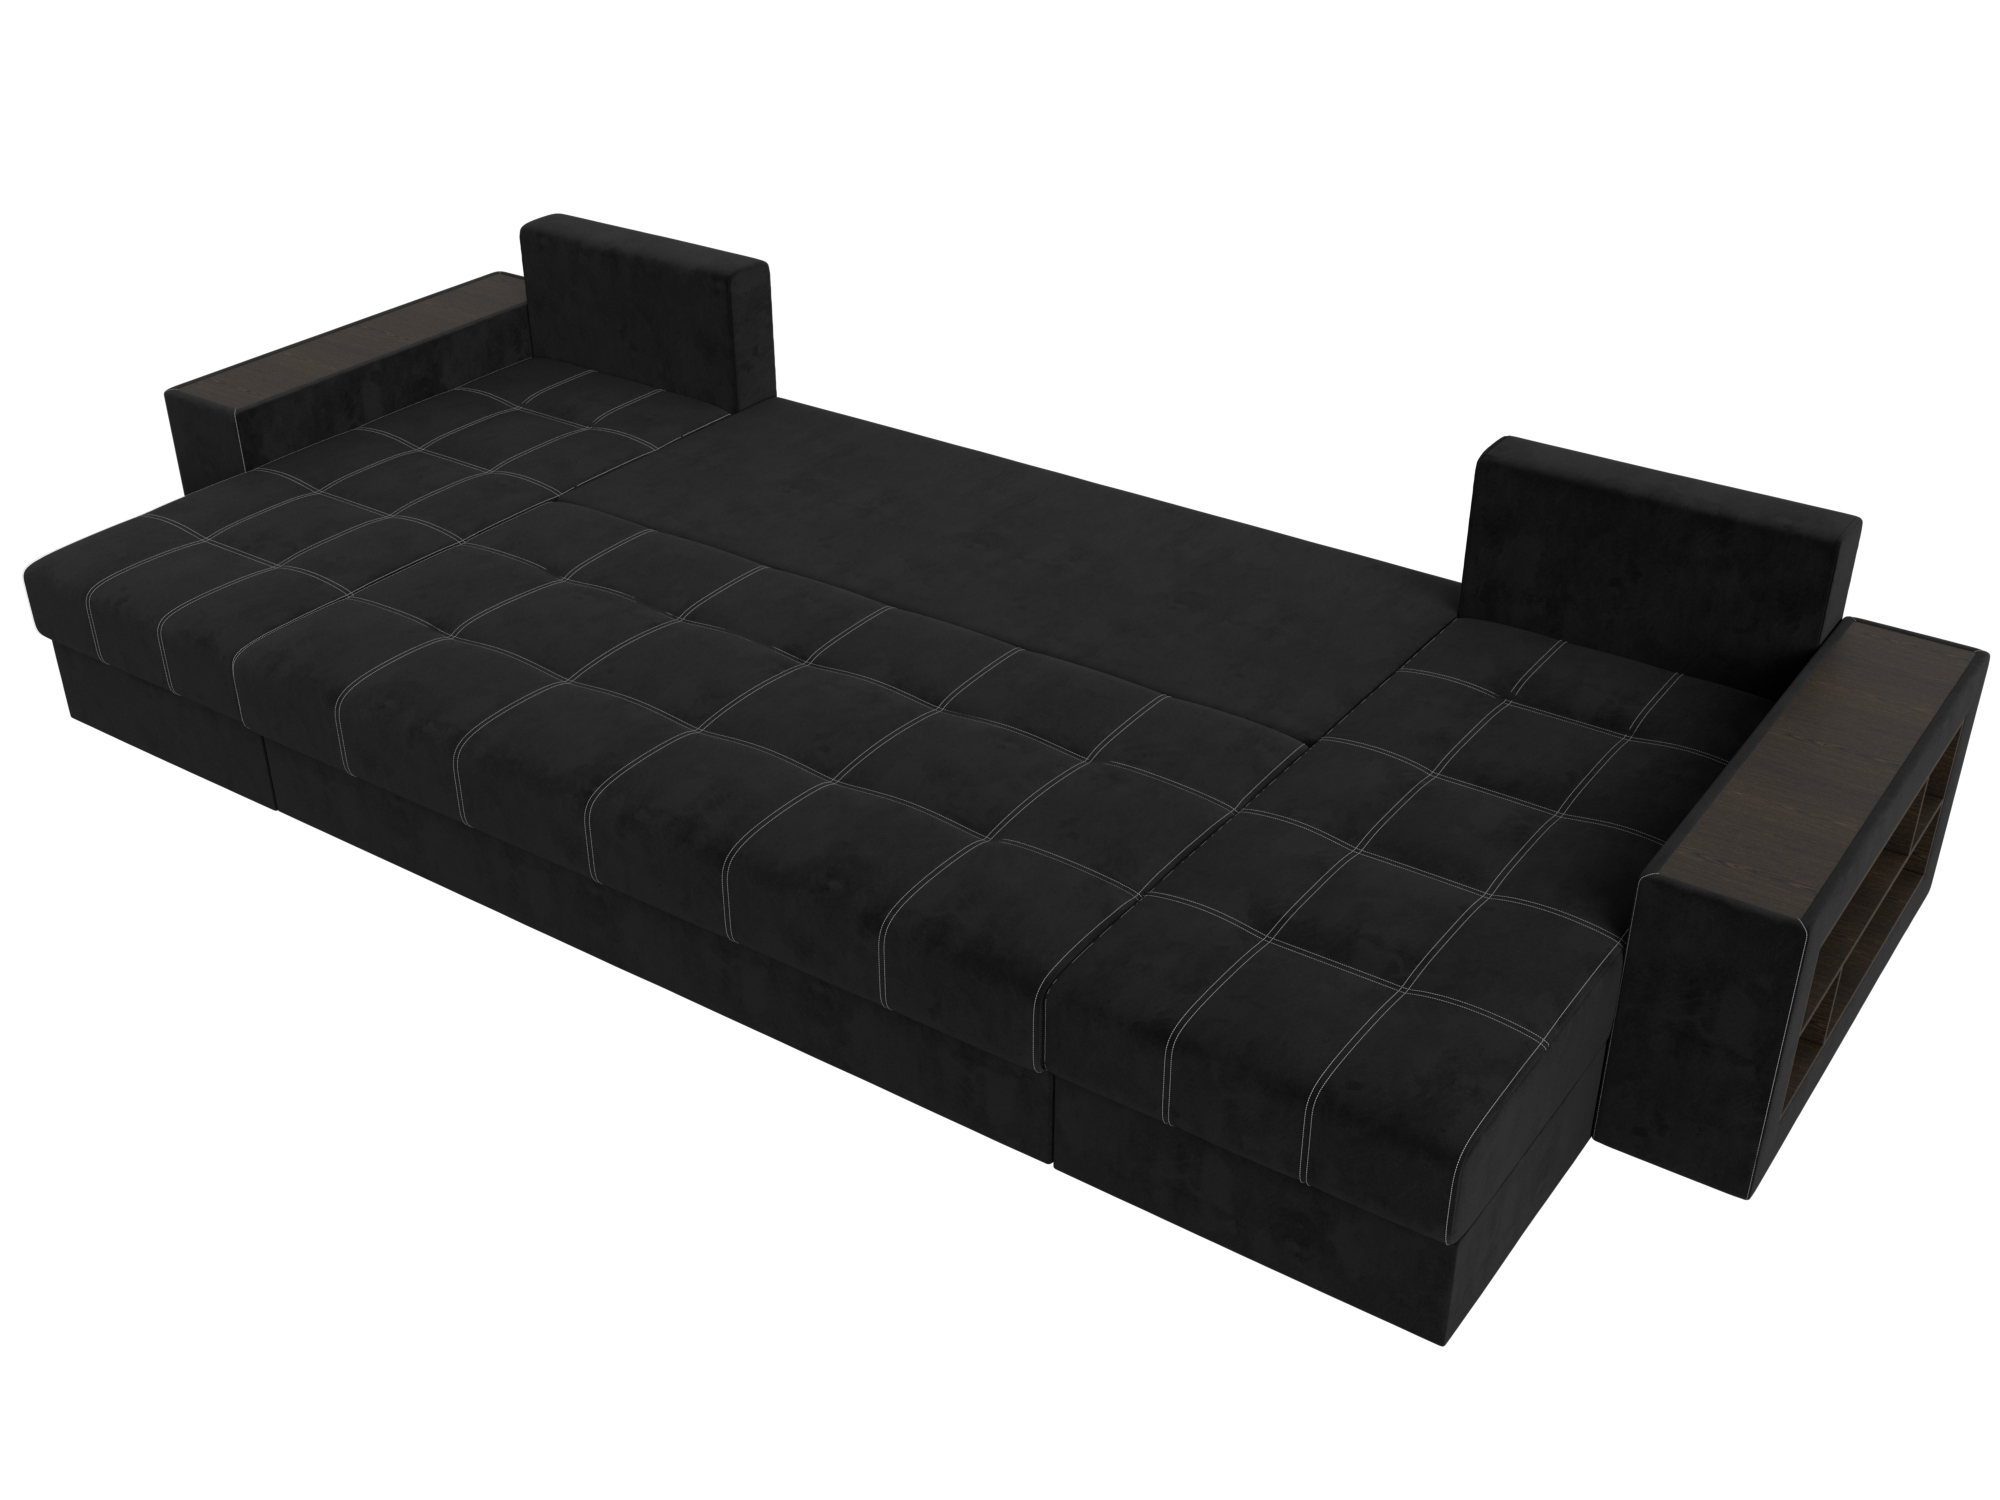 П-образный диван Дубай полки справа (Черный)